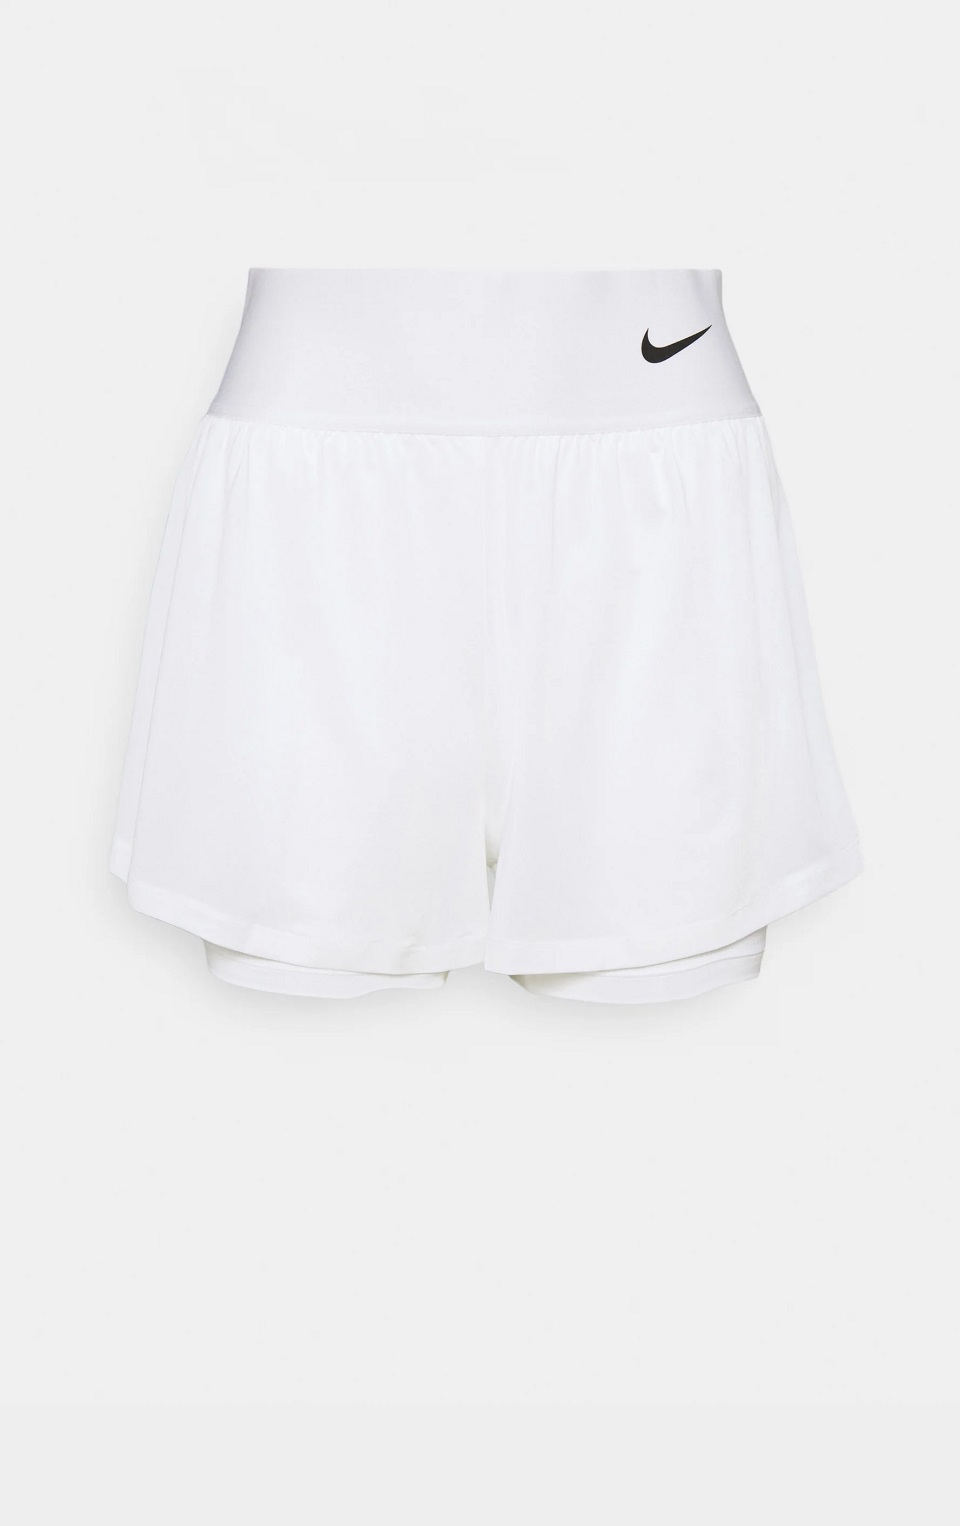 NikeCourt Advantage Kadın Tenis Şortu Beyaz